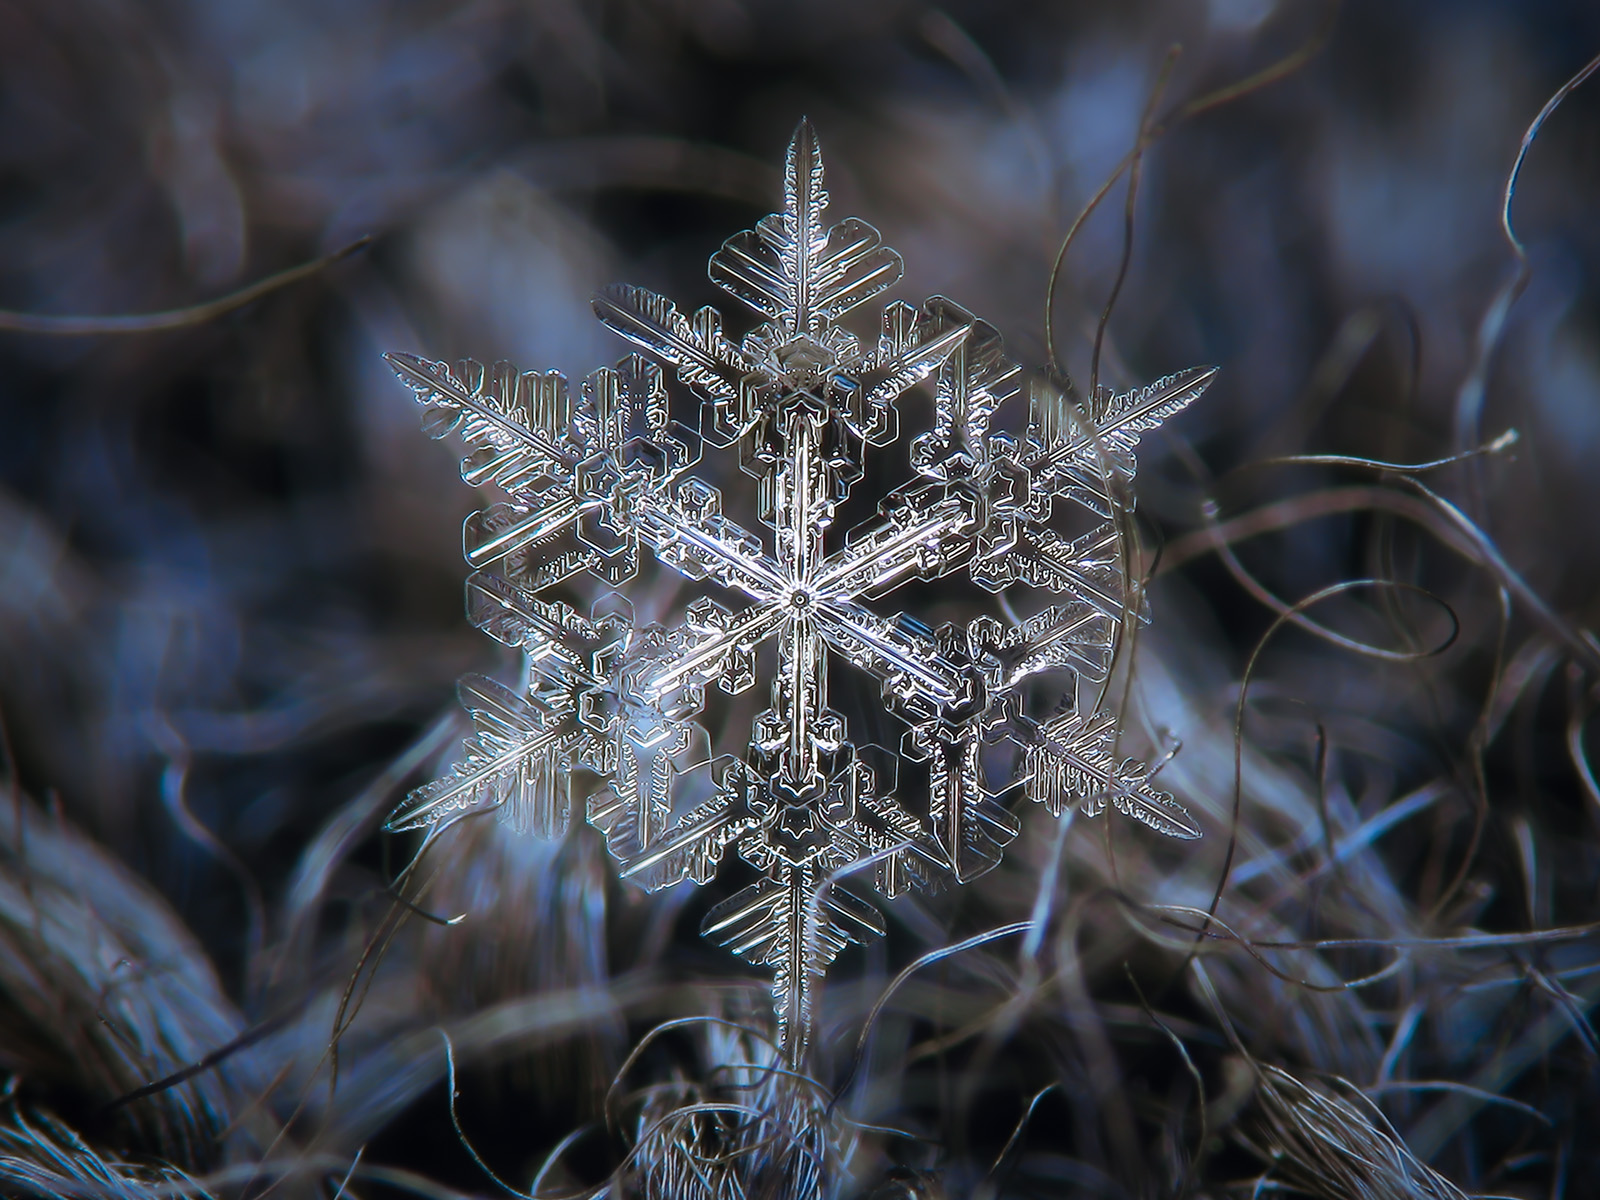 Real snowflake macro photo by Alexey-Kljatov on DeviantArt